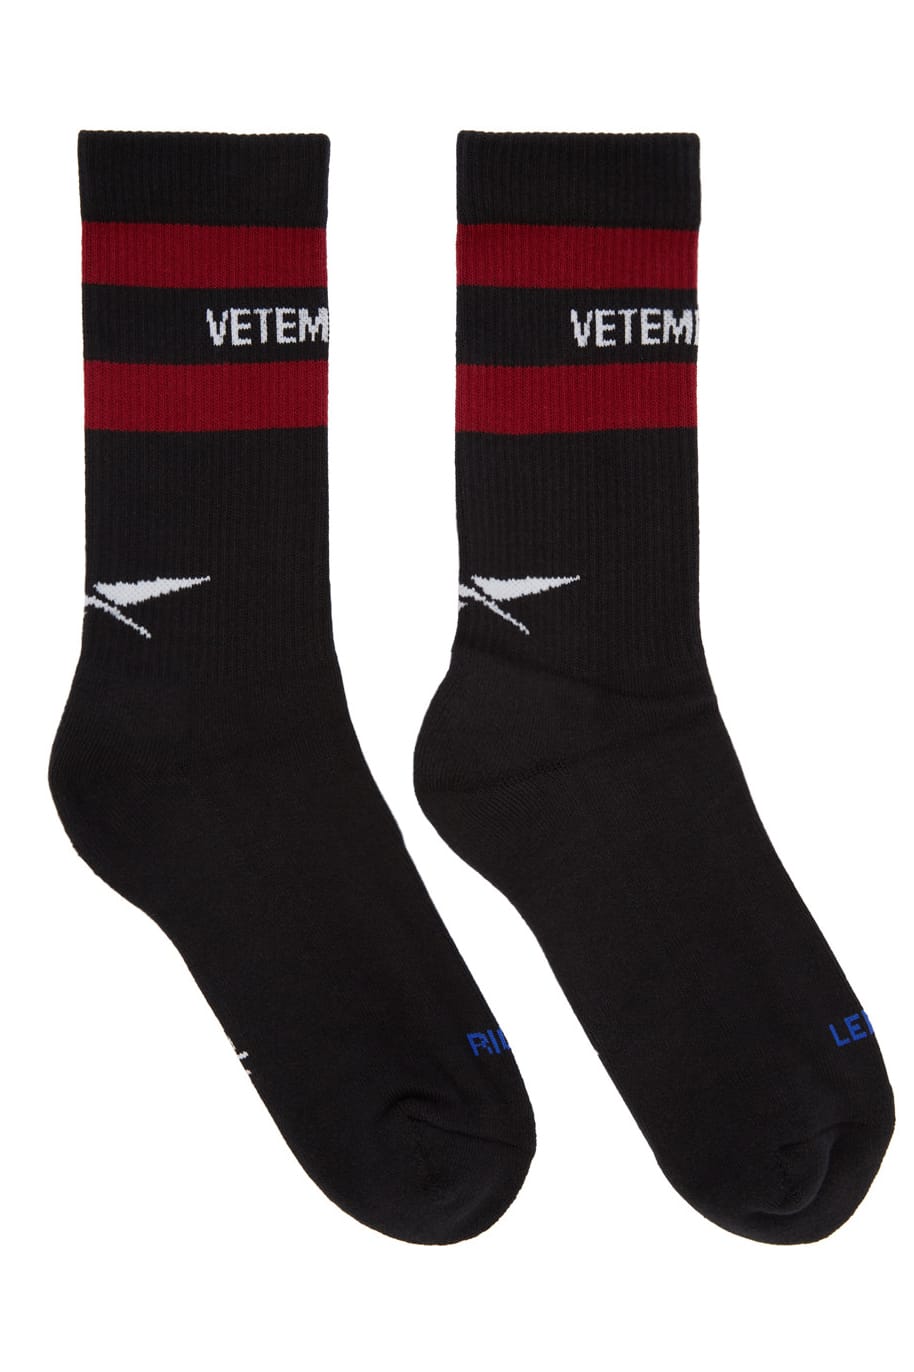 Vetements x Reebok Release Sock 